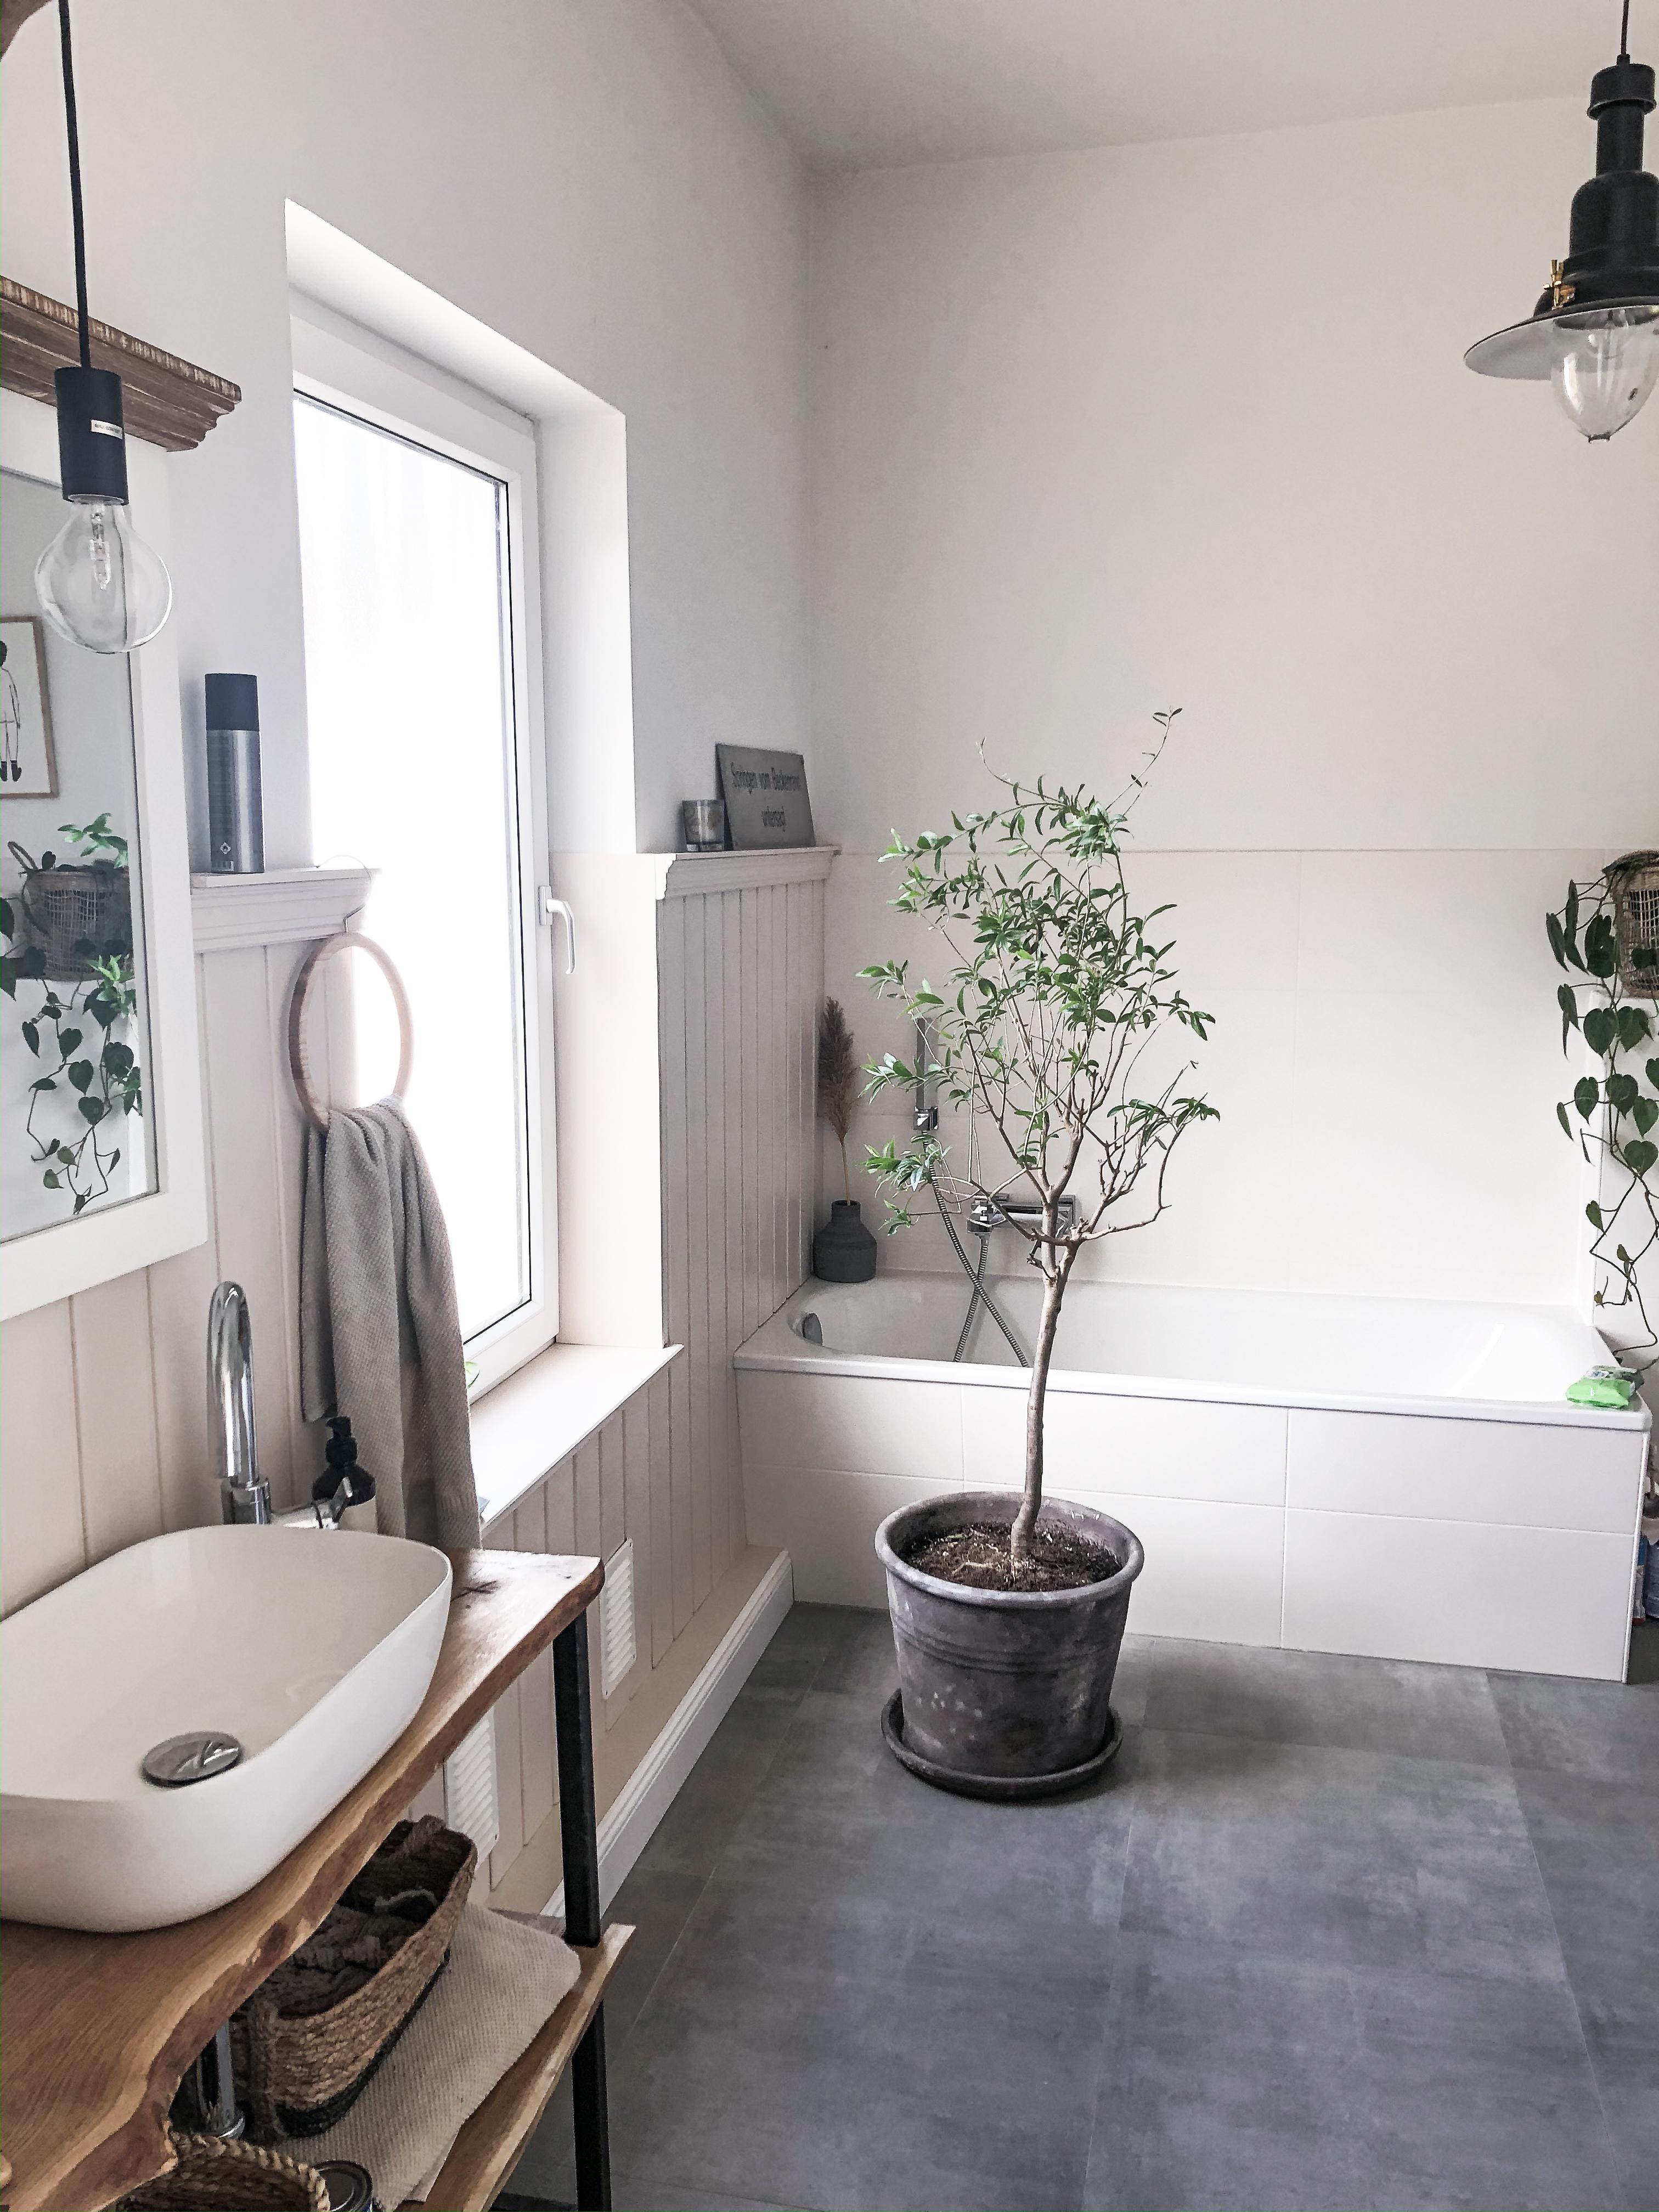 Badezimmer mit Wandvertäfelung 

#olivenbaum #bathroom #shabbychick #landhaus #waschtisch 